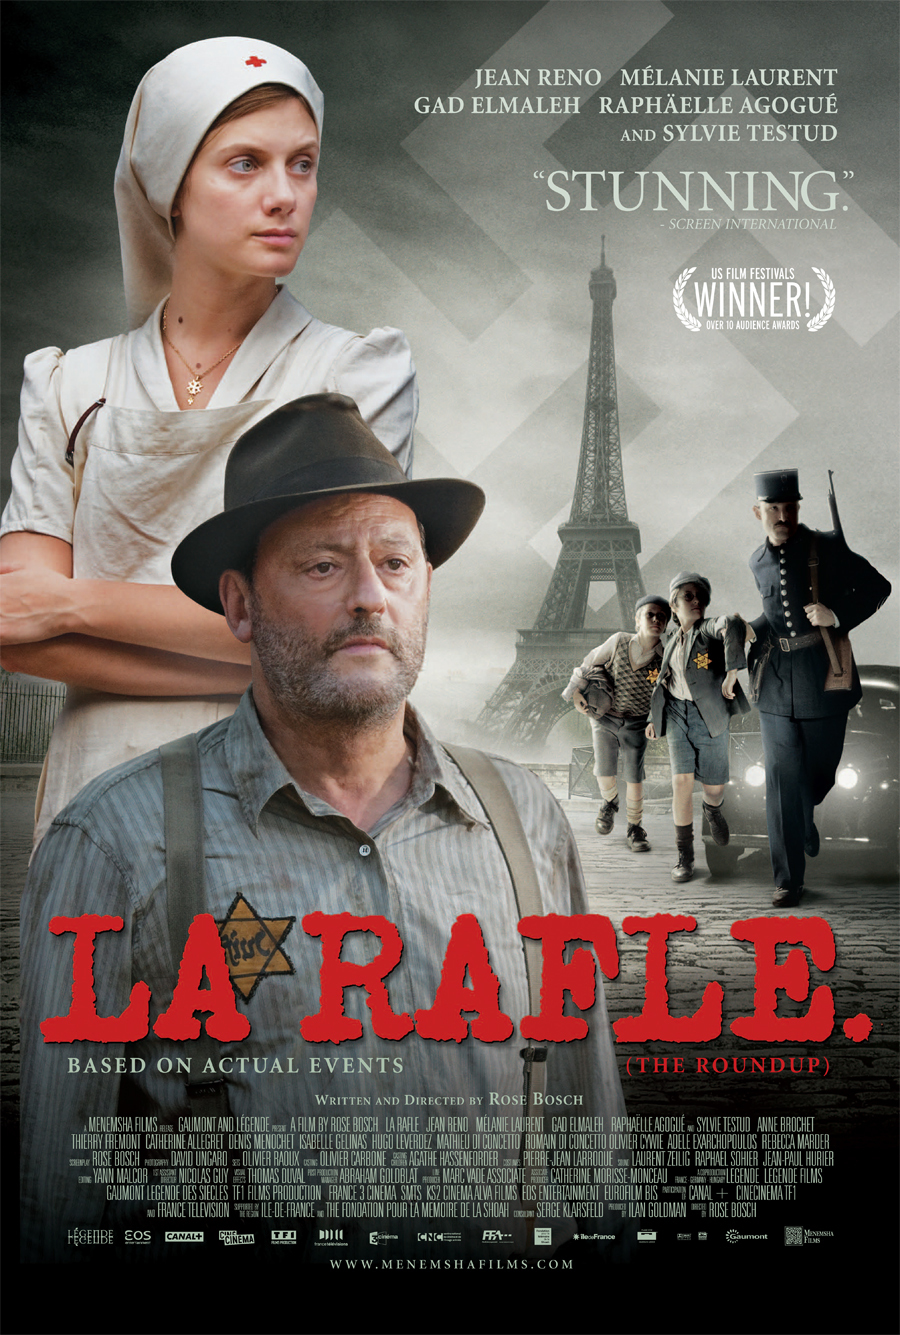 La rafle Aka The Roundup (2010)